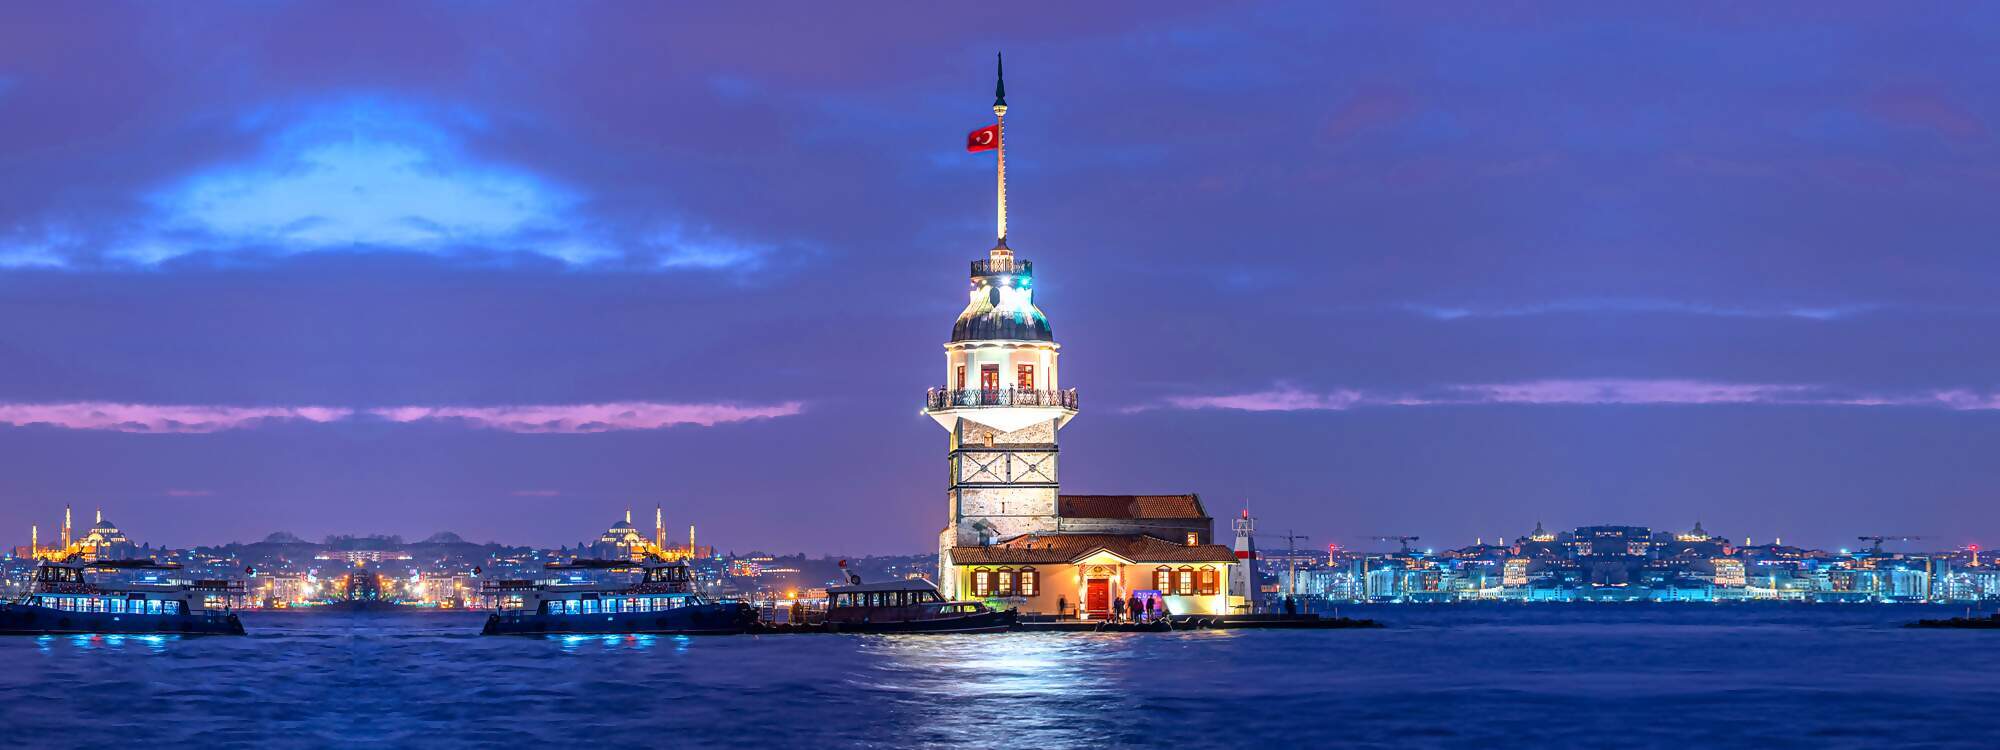 Der Turm des Maedchens oder auf tuerkisch Kiz Kulesi in Istanbul - Türkei